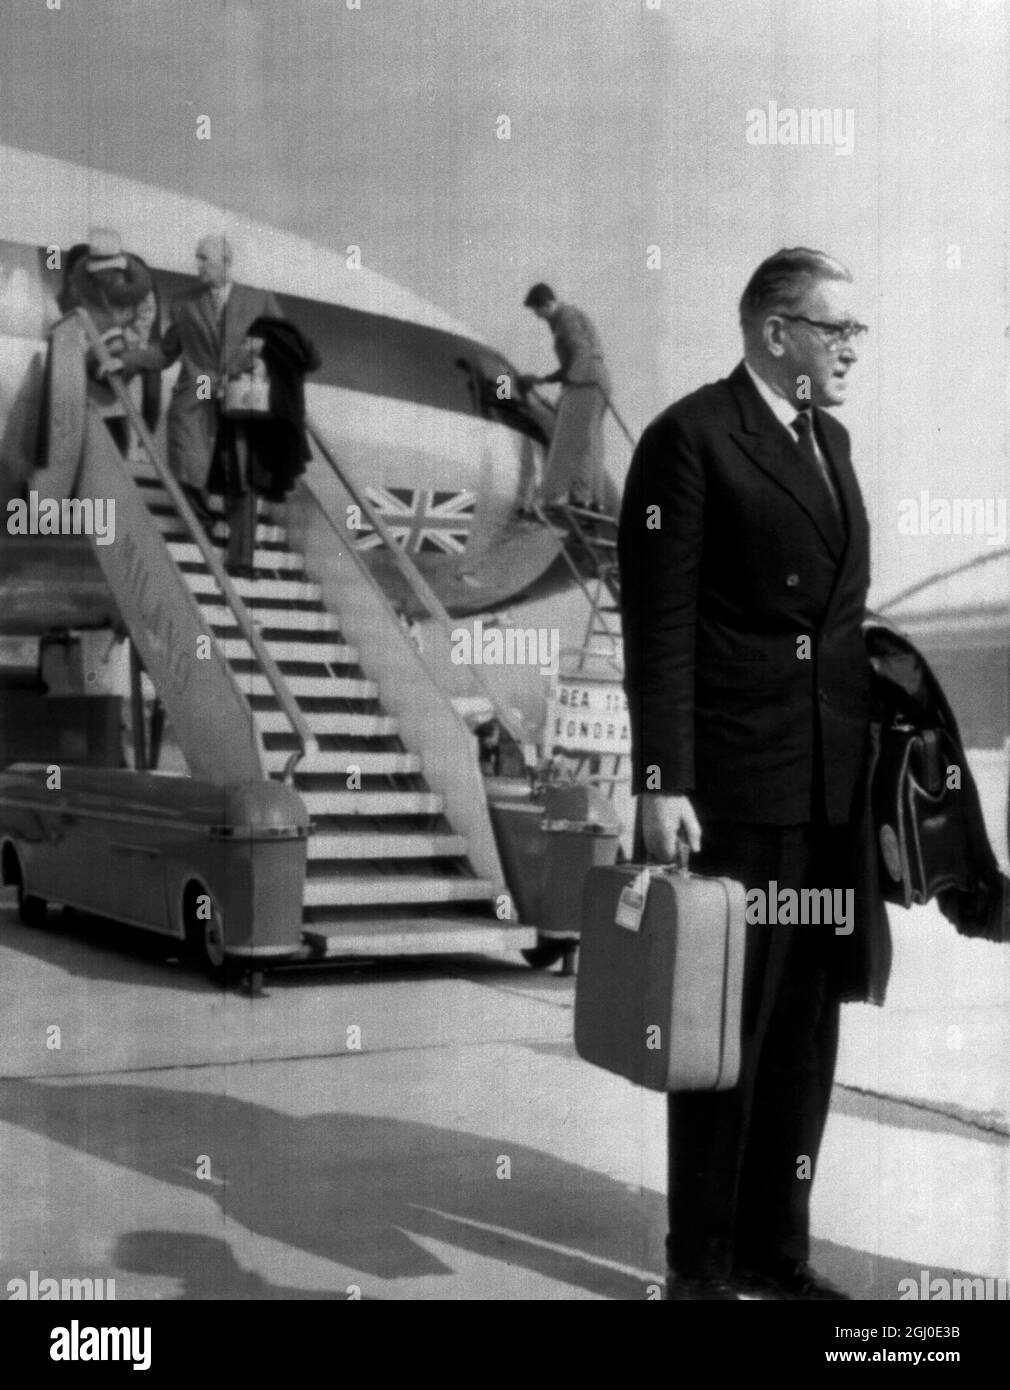 M. Joe Mears, président du club de football de Chelsea, à son arrivée à l'aéroport de Milan, pour entamer des pourparlers directs avec le club de football de Milan au sujet du transfert de Jimmy Greaves, l'ancien joueur de Chelsea en Angleterre. 23 octobre 1961. Banque D'Images